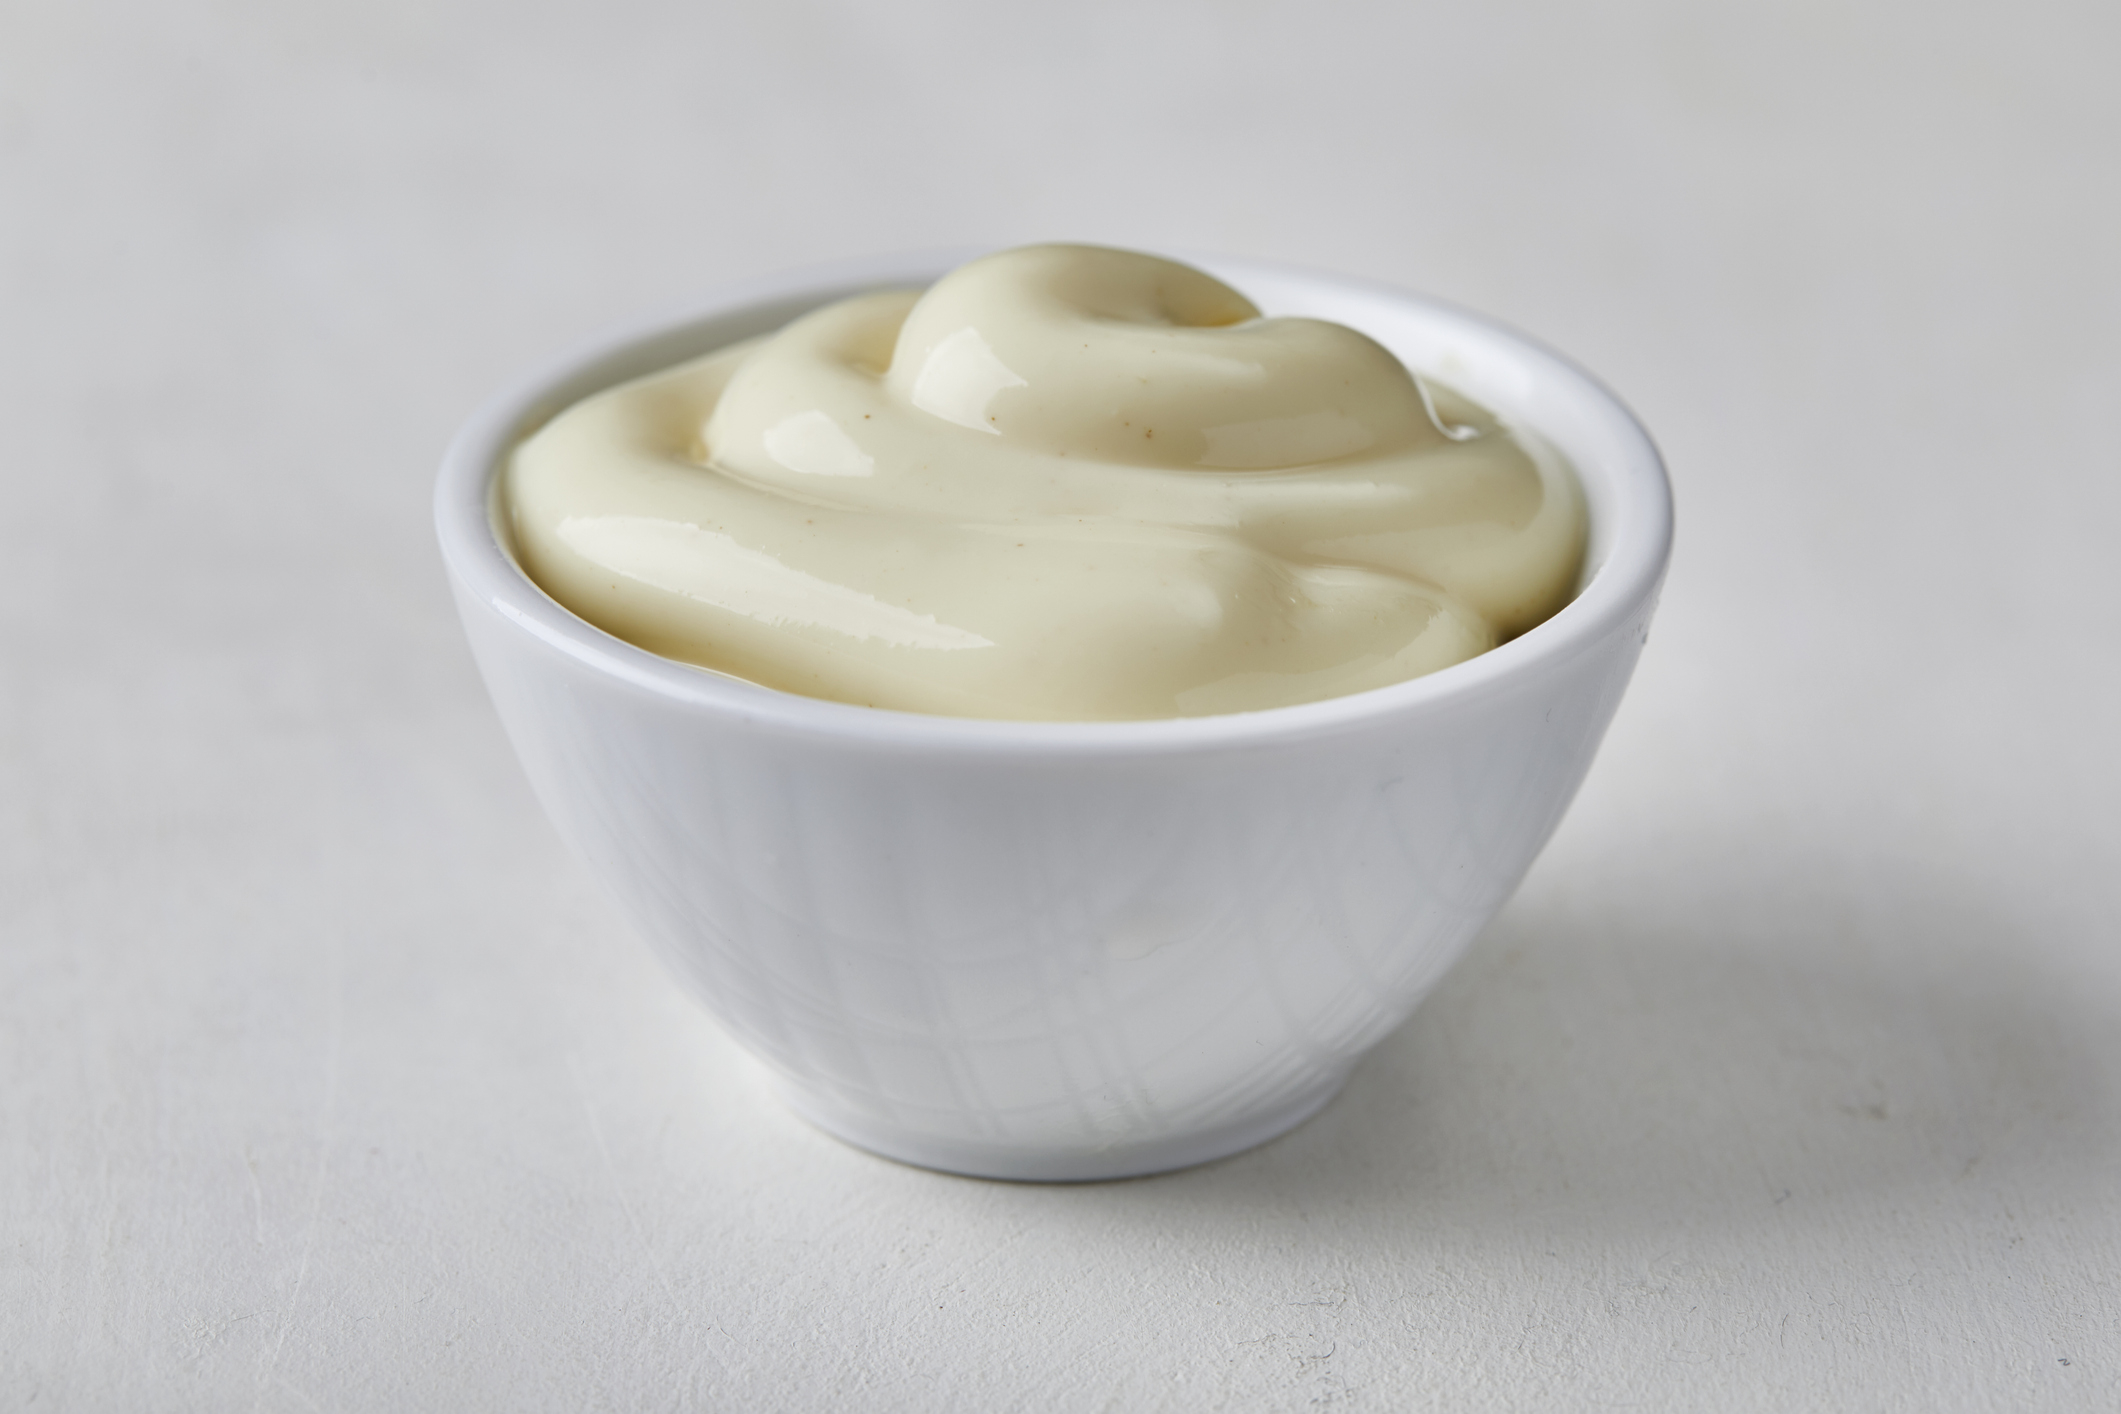 A bowl of mayonnaise on a plain surface